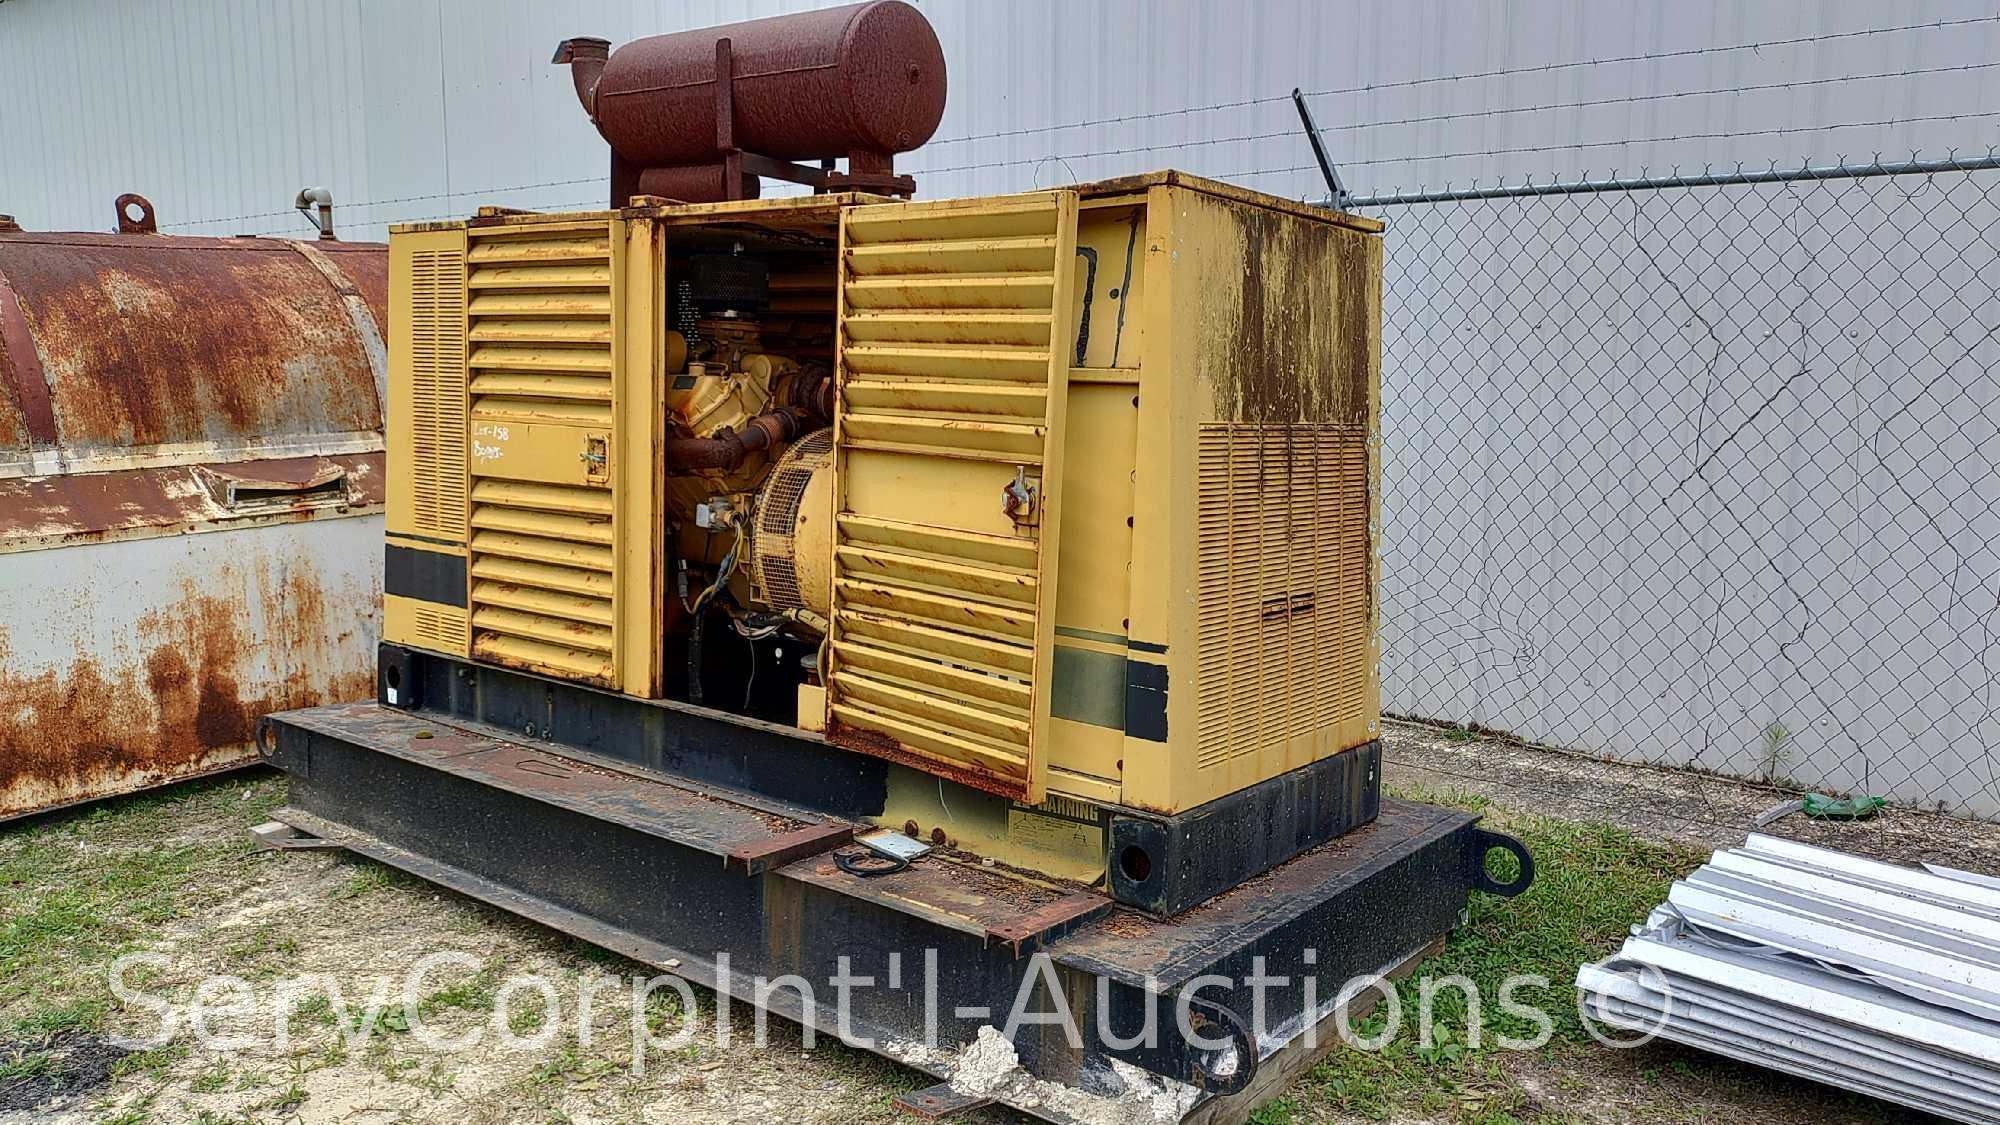 Caterpillar 3208 150-KW 60-Hertz, 3-Phase Diesel Generator, Customer Must Load Themselves (Seller: